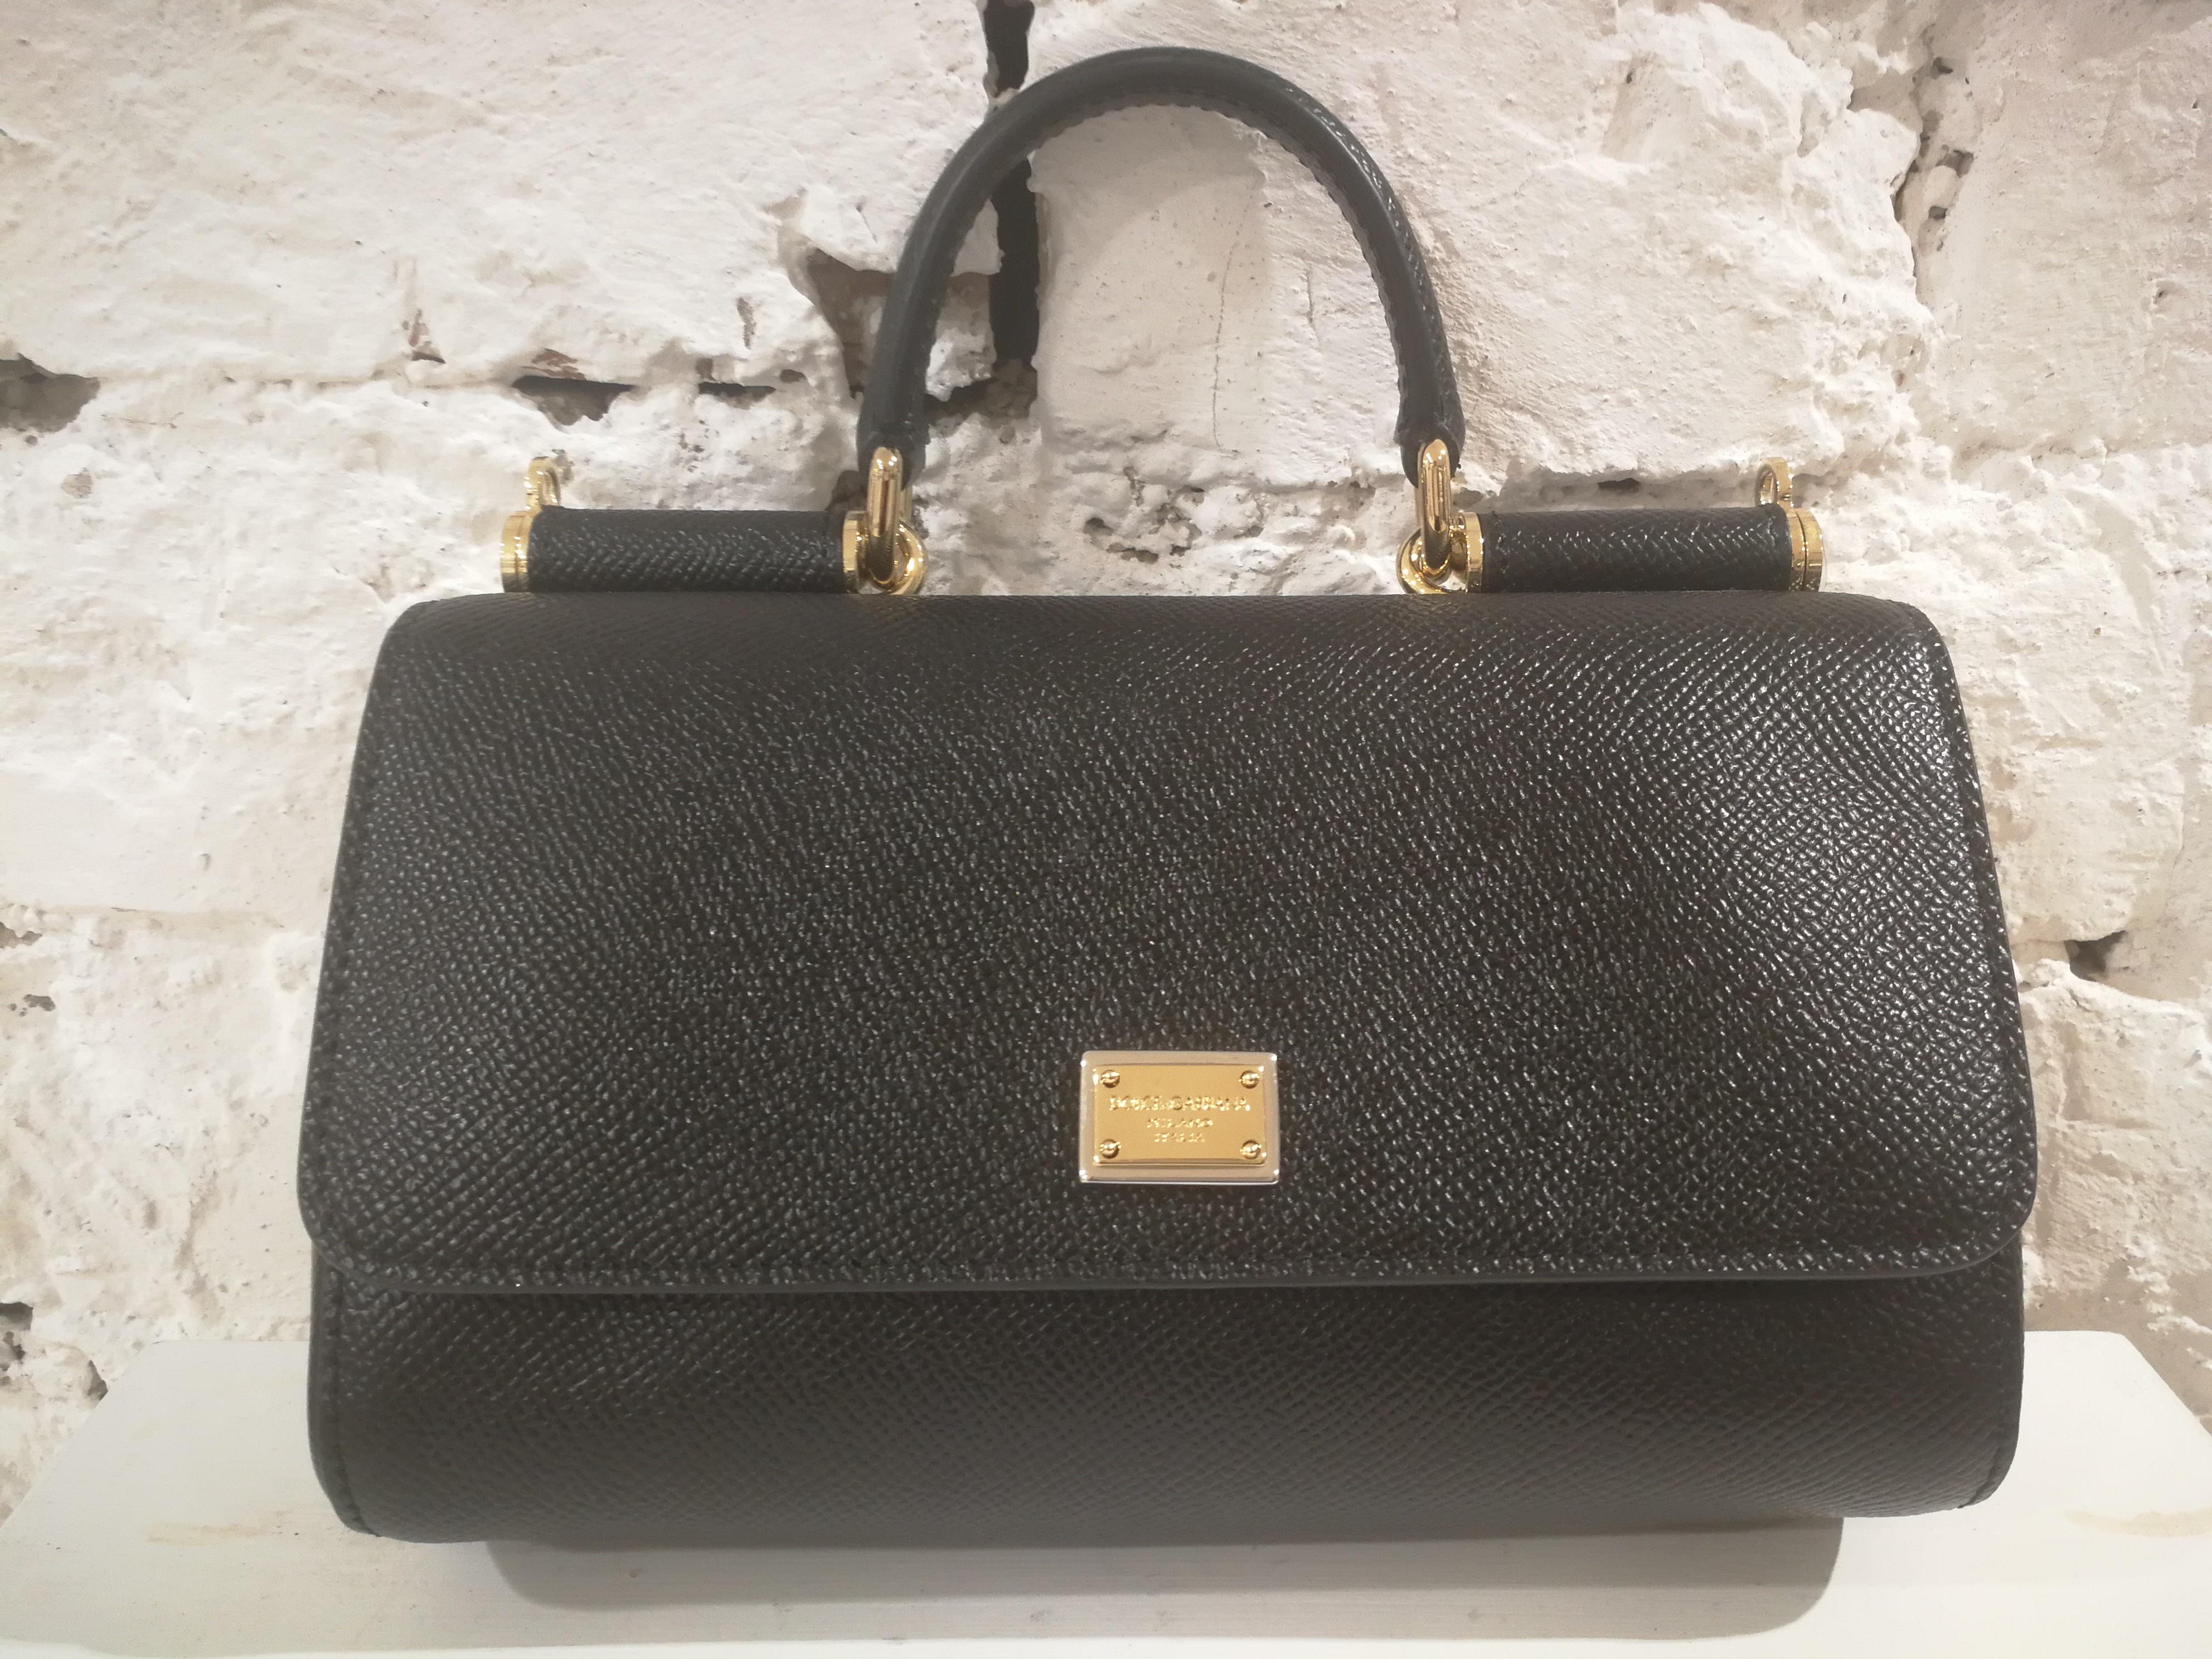 Dolce & Gabbana Black Leather Shoulder Bag NWOT 4